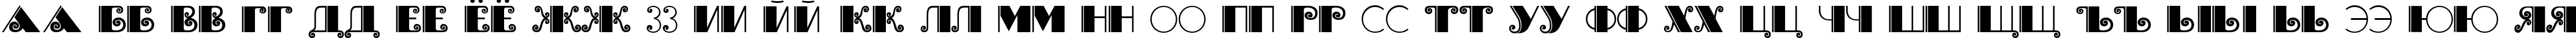 Пример написания русского алфавита шрифтом Brasileiro One Medium